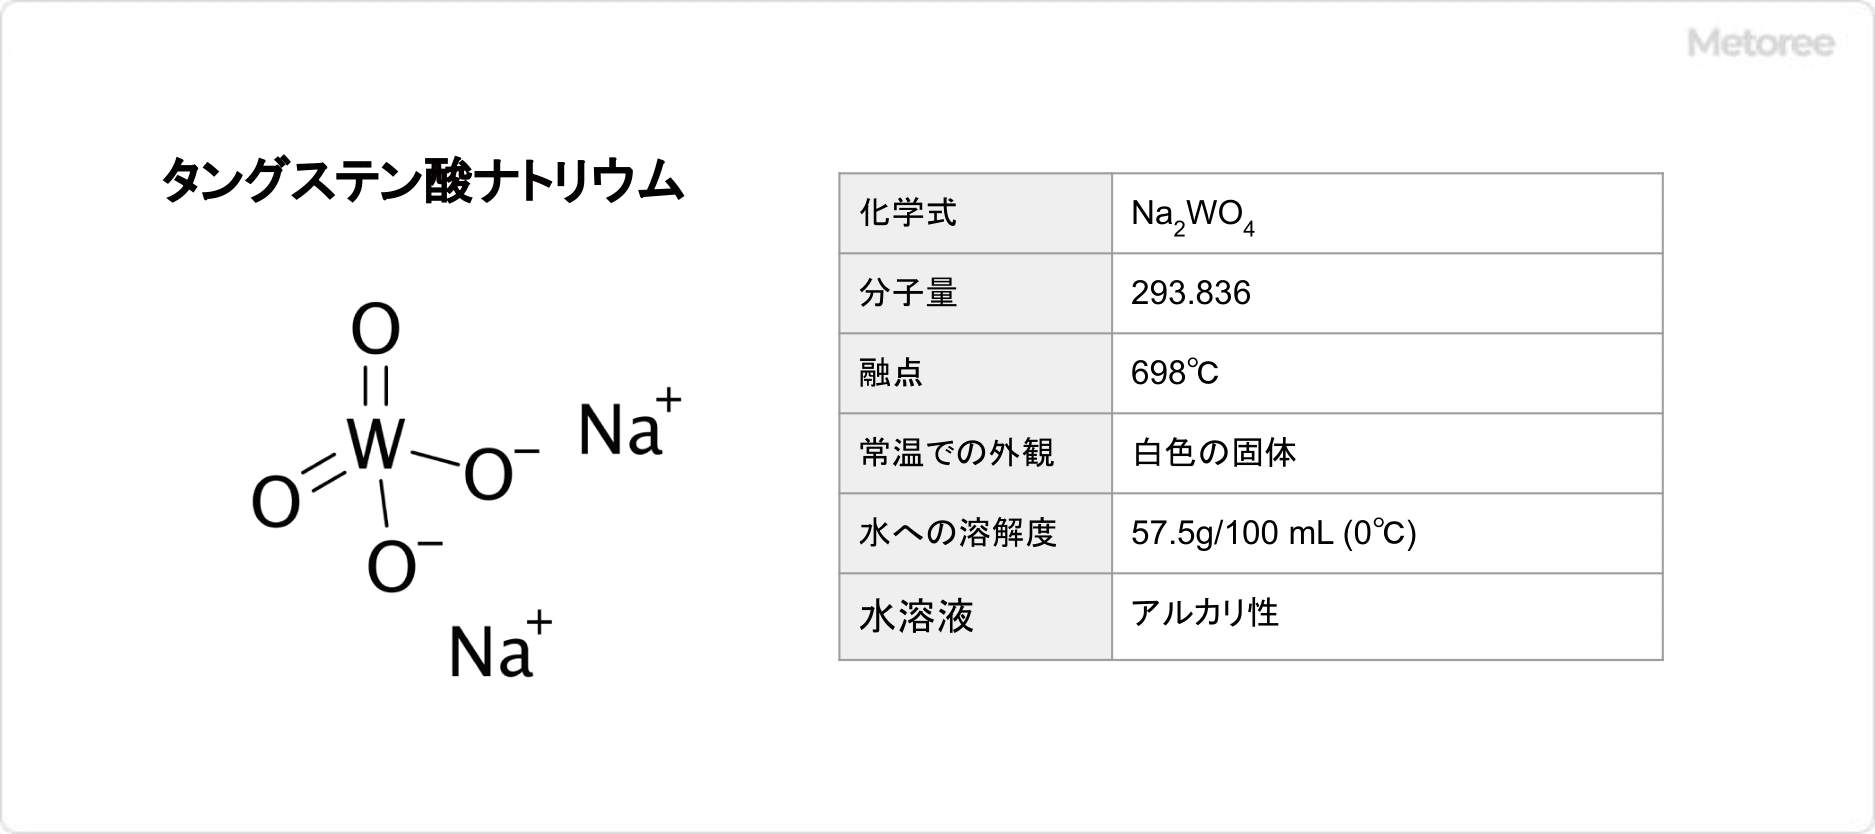 タングステン酸ナトリウムの基本情報